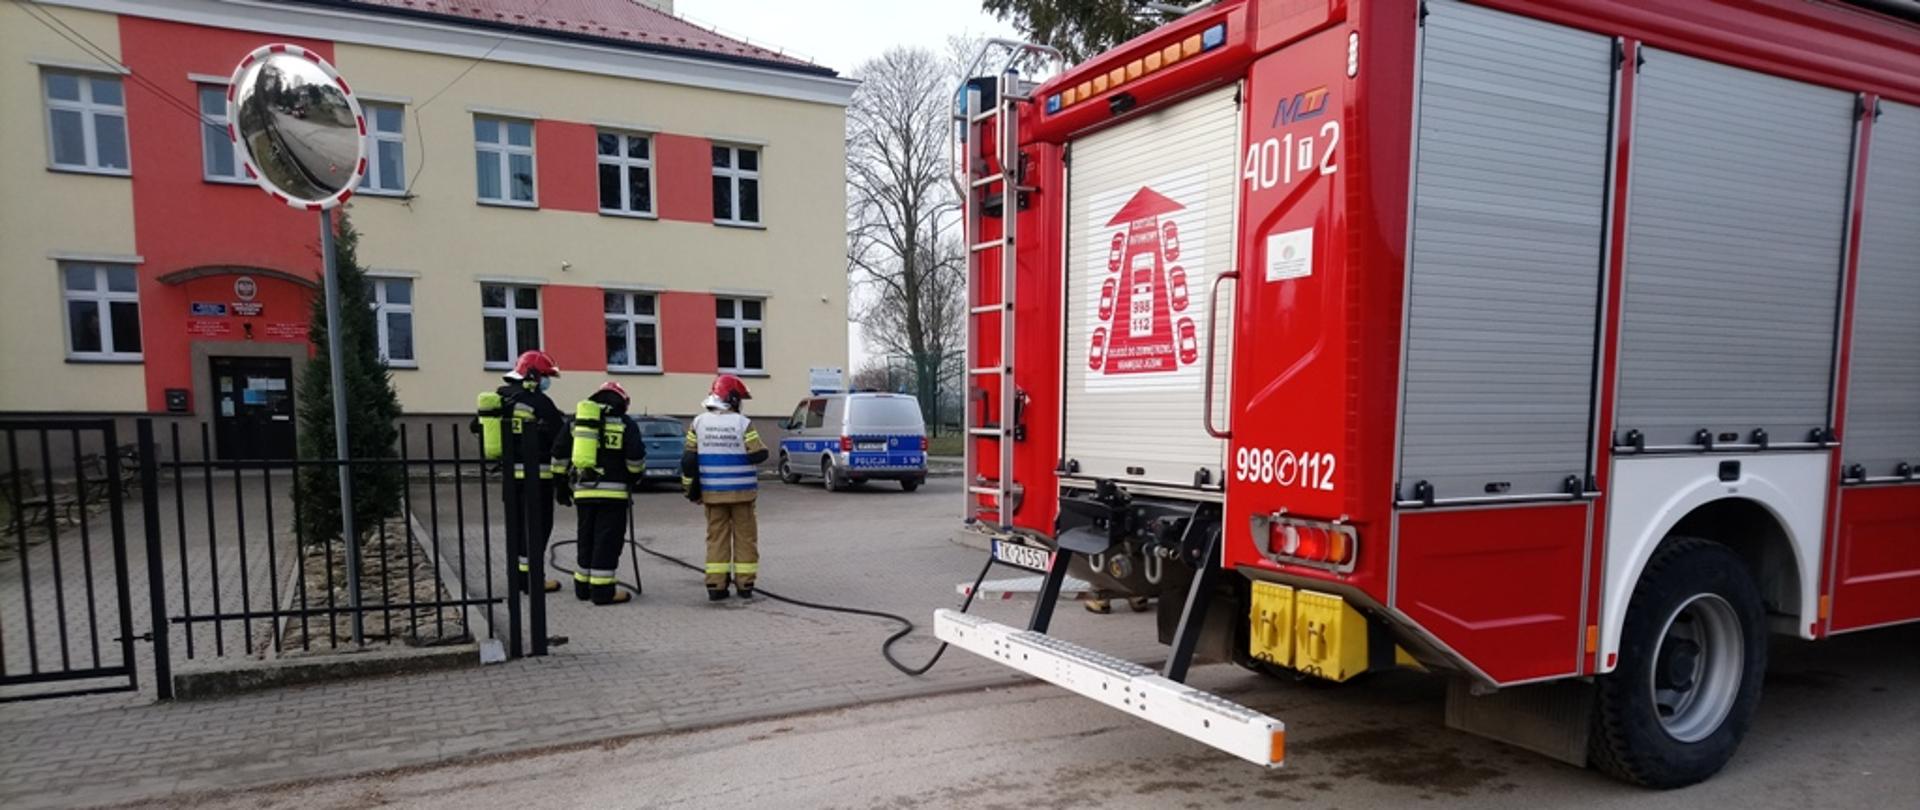 Na zdjęciu trzech strażaków zabezpieczających miejsce akcji, po prawej stronie zdjęcia pojazd pożarniczy.